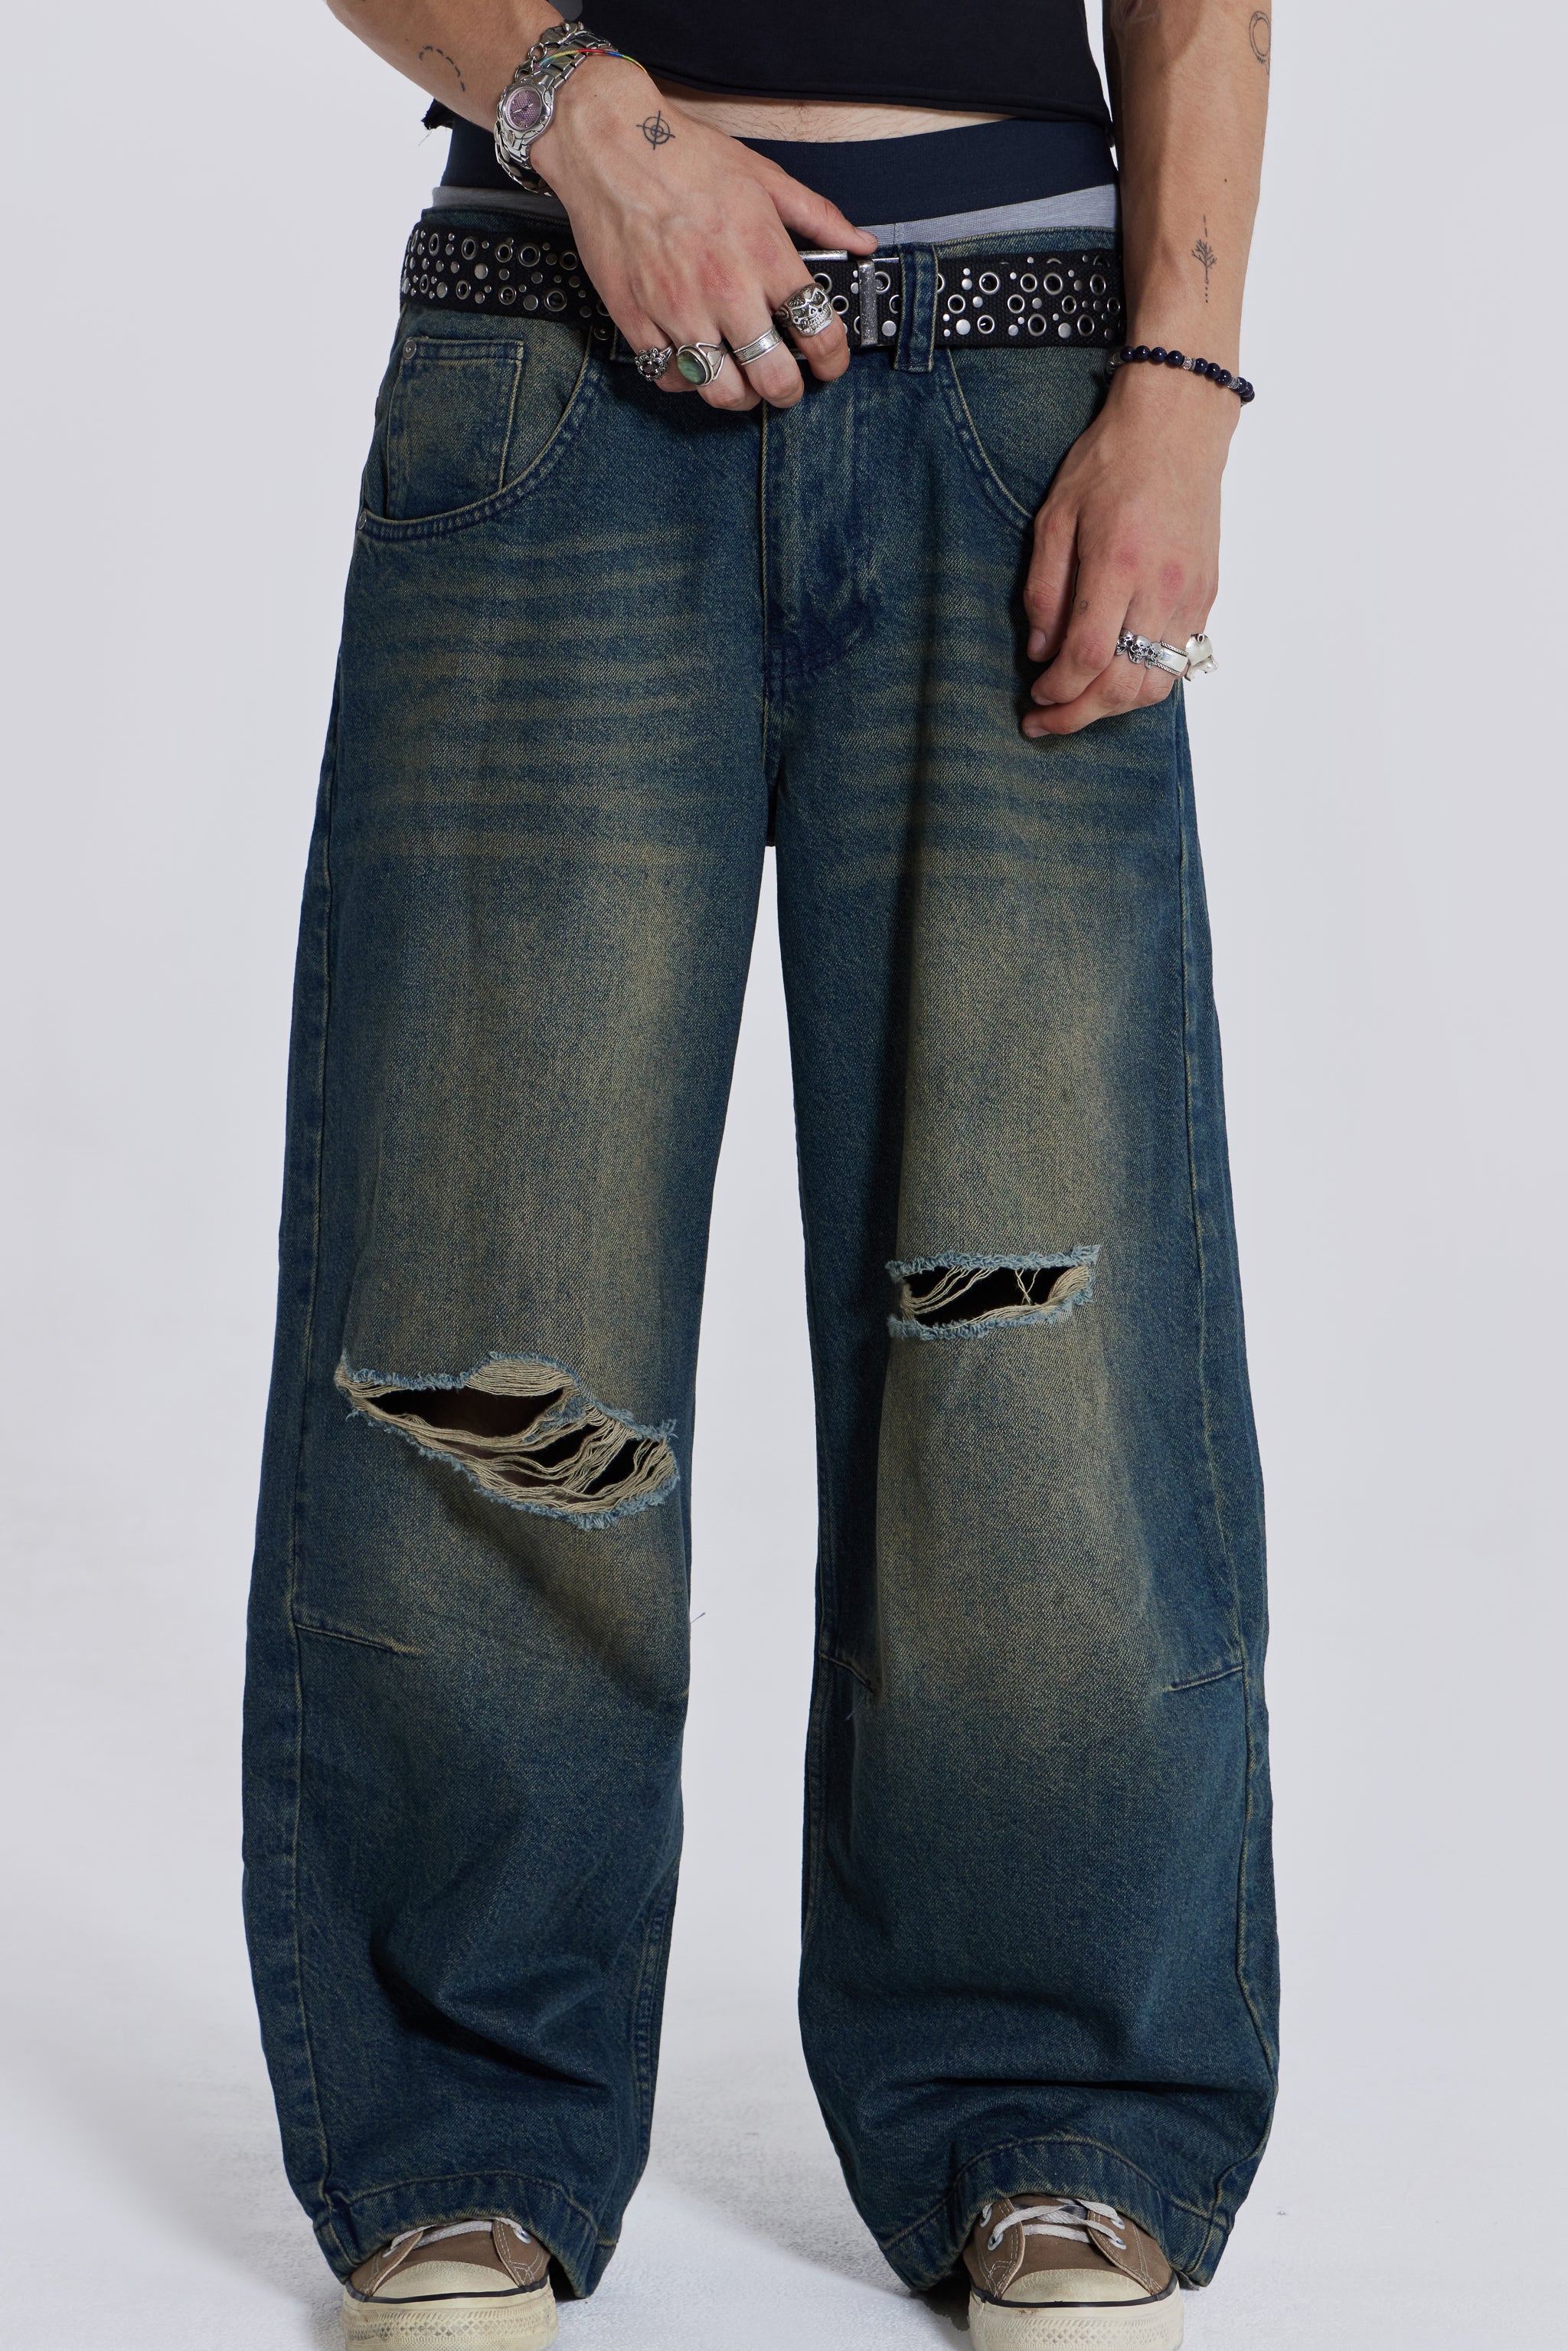 jaded london colossus jeans ワイドデニムDamagedDenimC